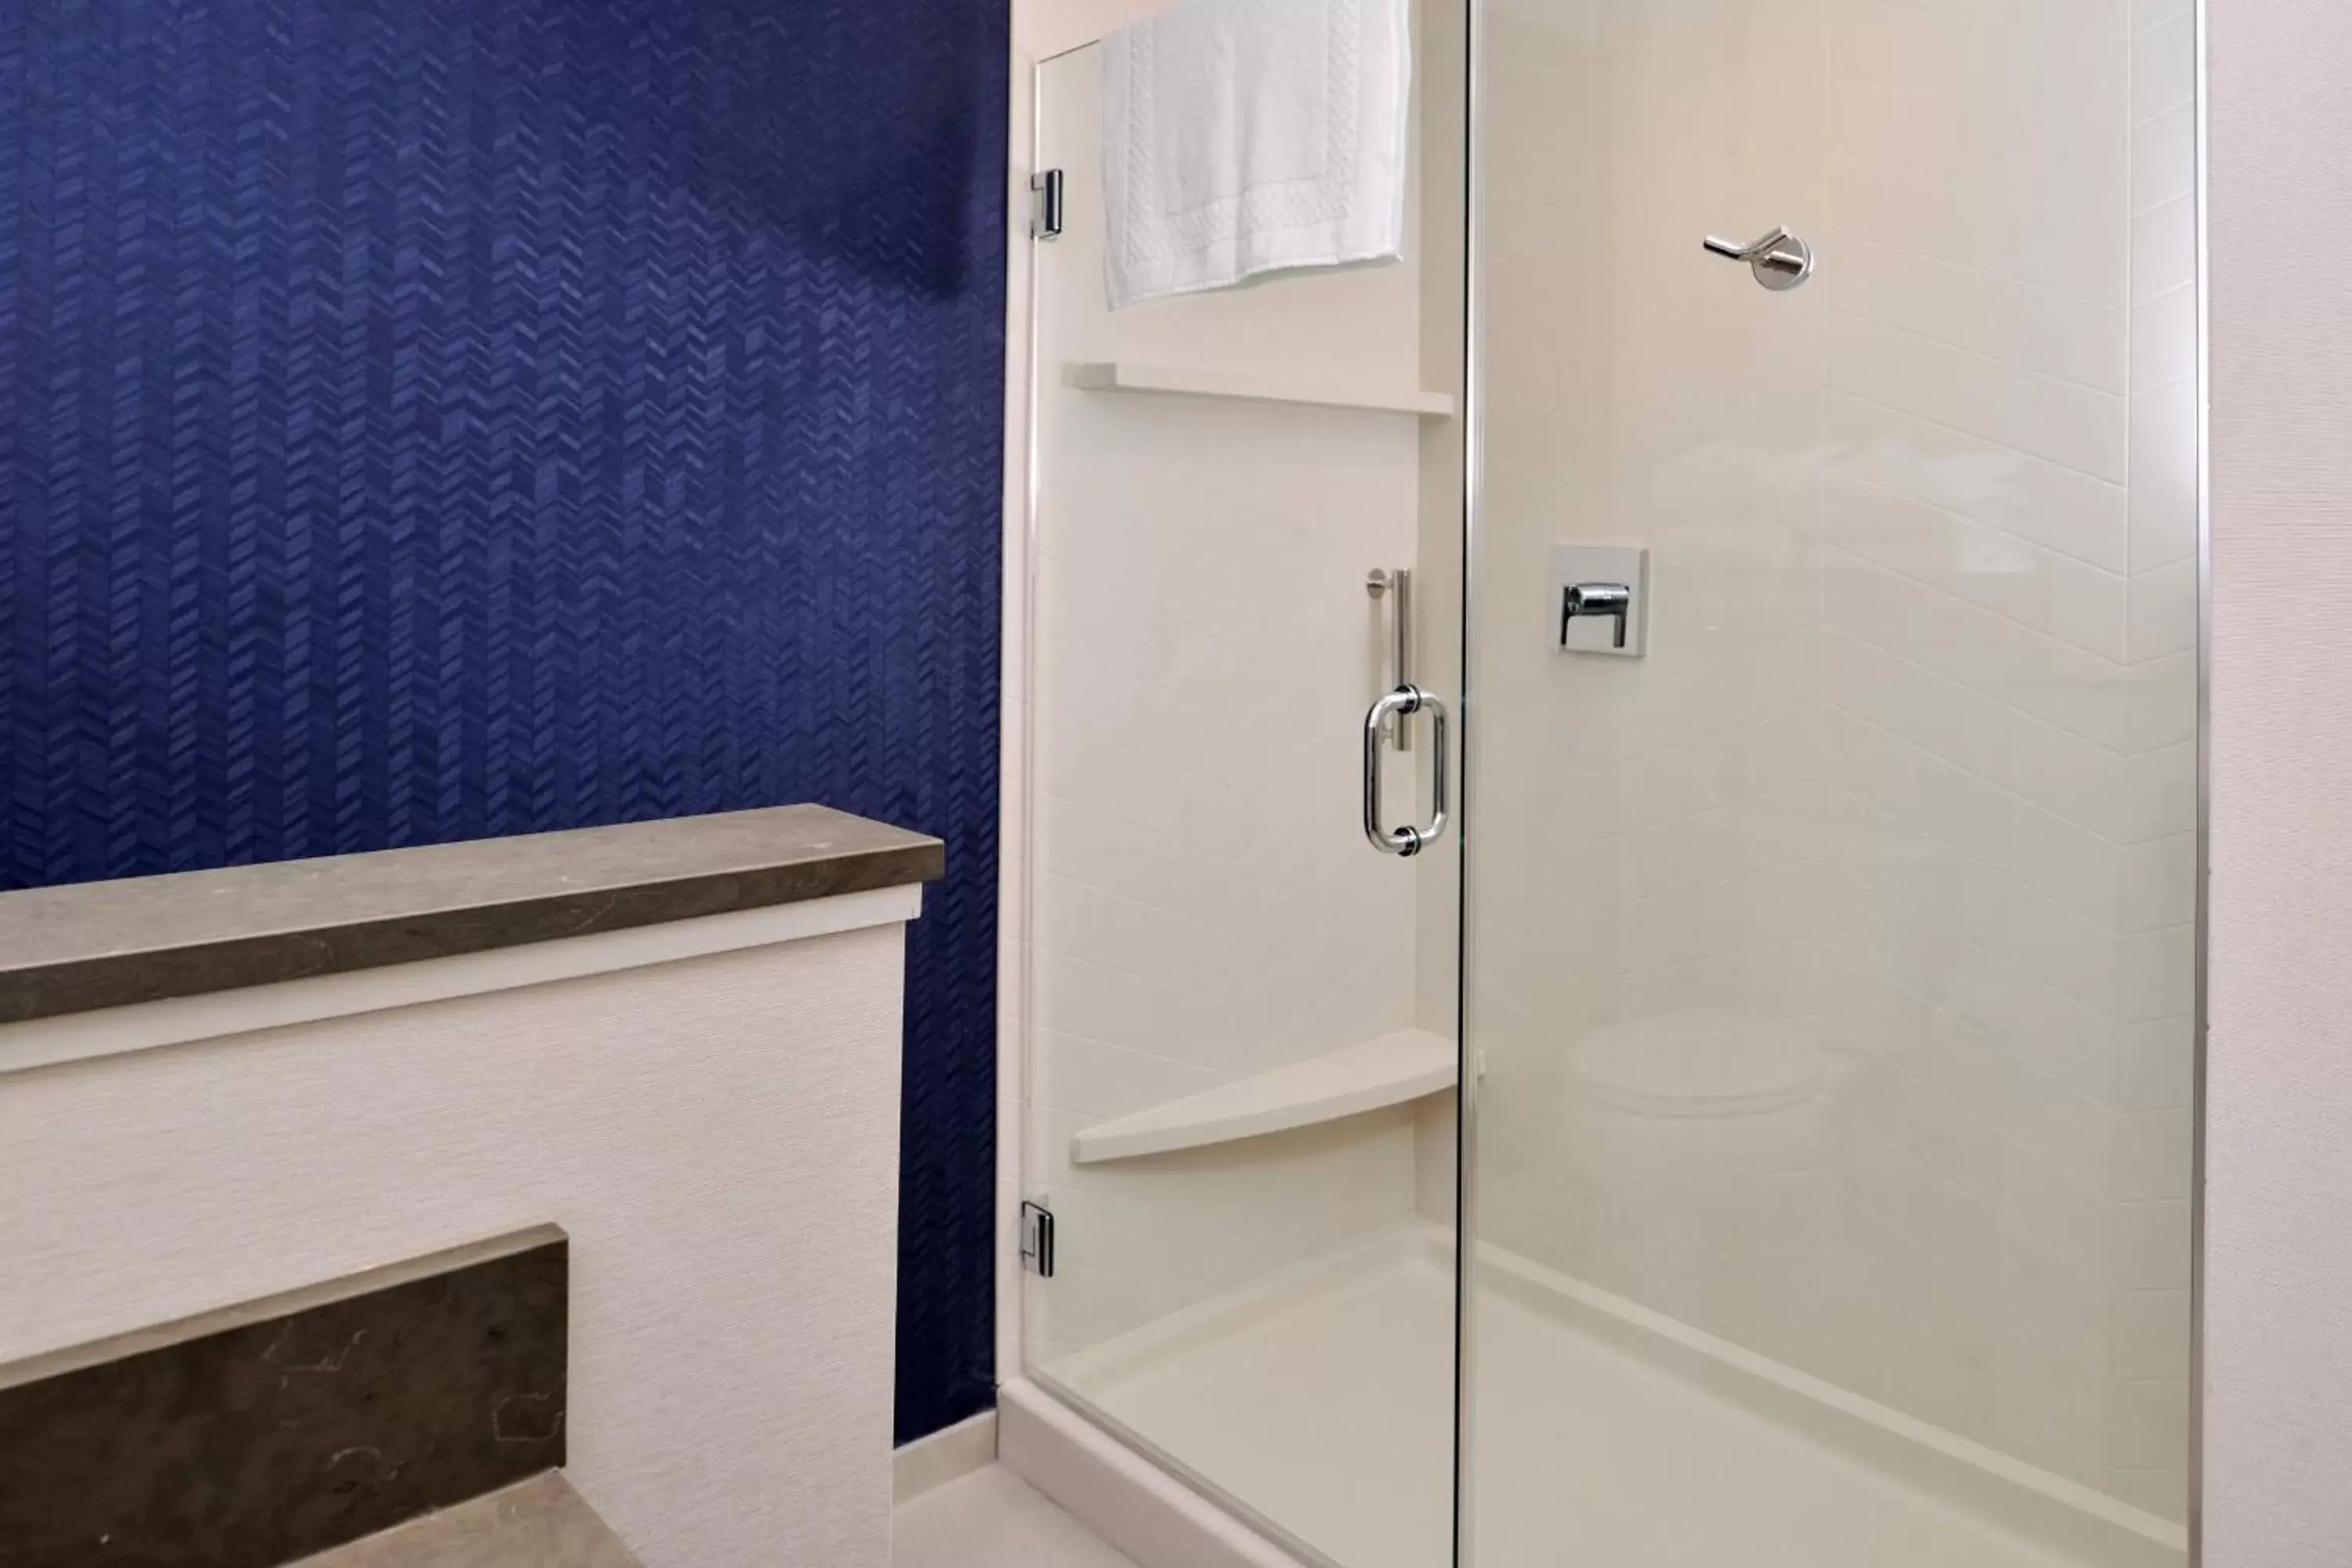 Bathroom in Fairfield Inn & Suites by Marriott Canton